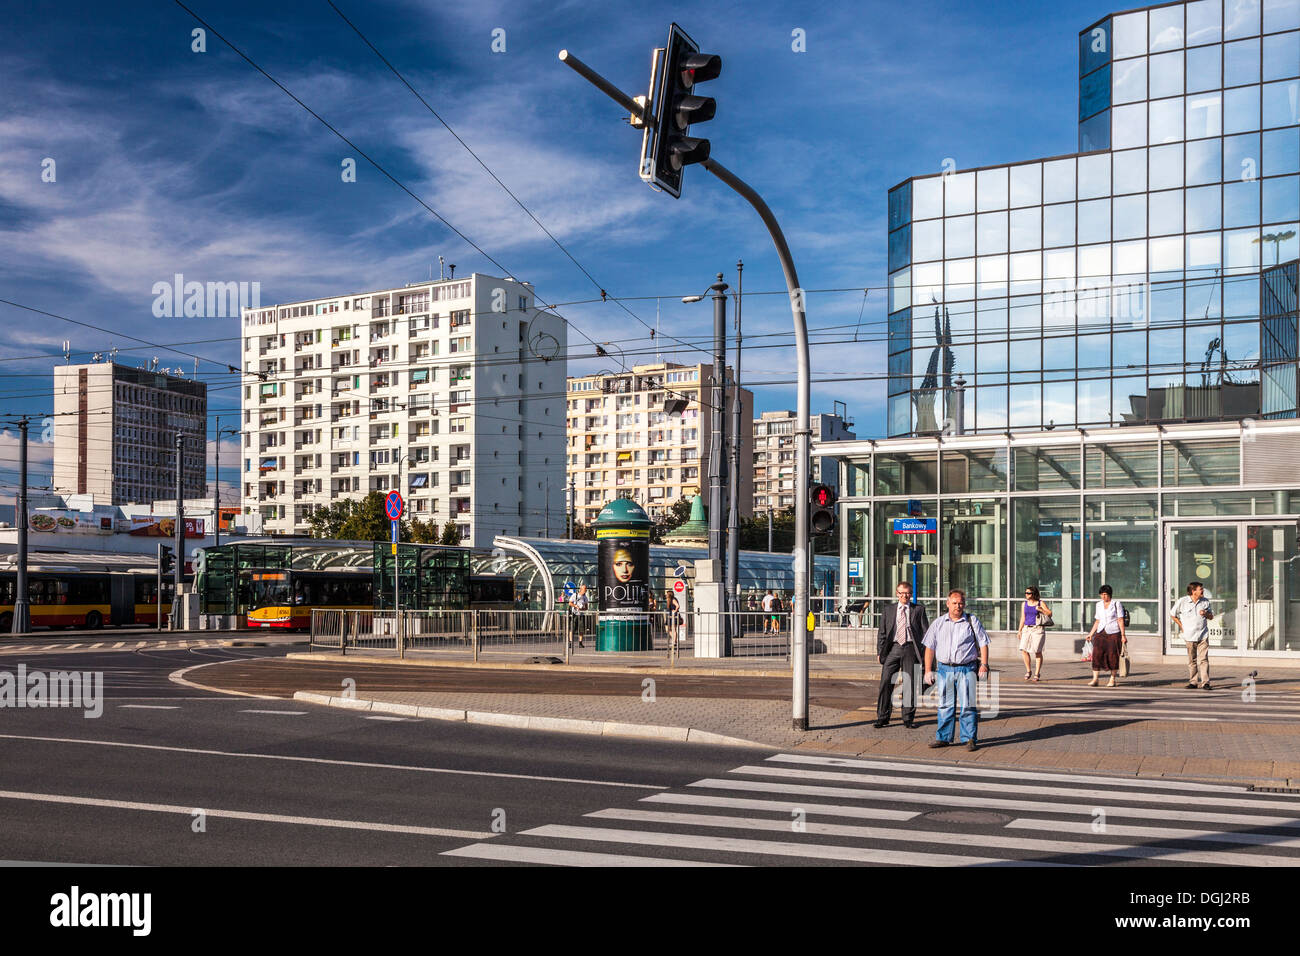 Typischen osteuropäischen Stadtzentrum Sommer Straßenszene am Plac Bankowy in Warschau. Stockfoto